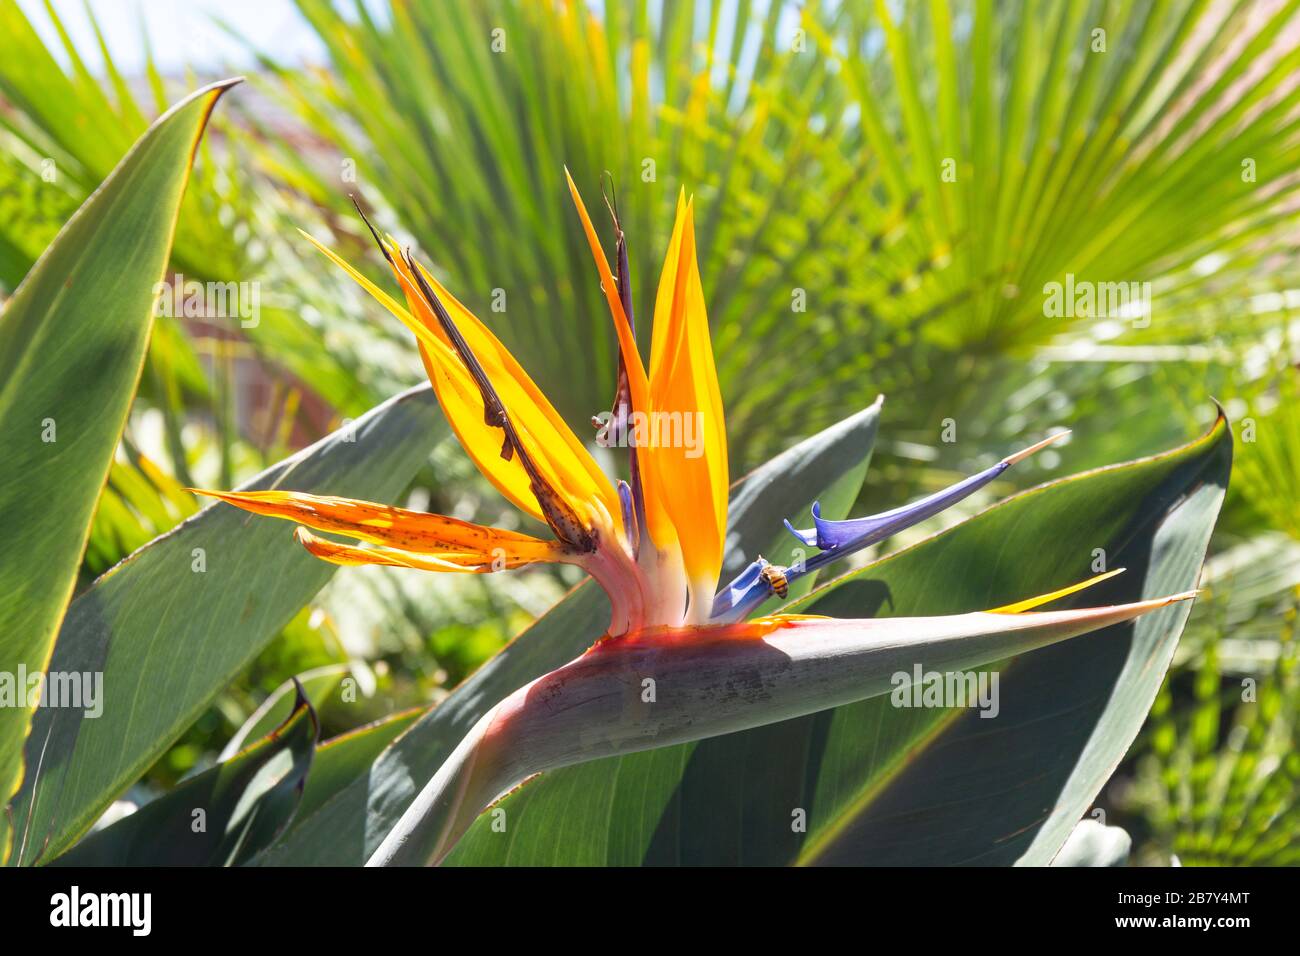 Pájaro del Paraíso (Strelitzia) flor, Selcourt, Springs, Rand este, Provincia de Gauteng, República de Sudáfrica Foto de stock